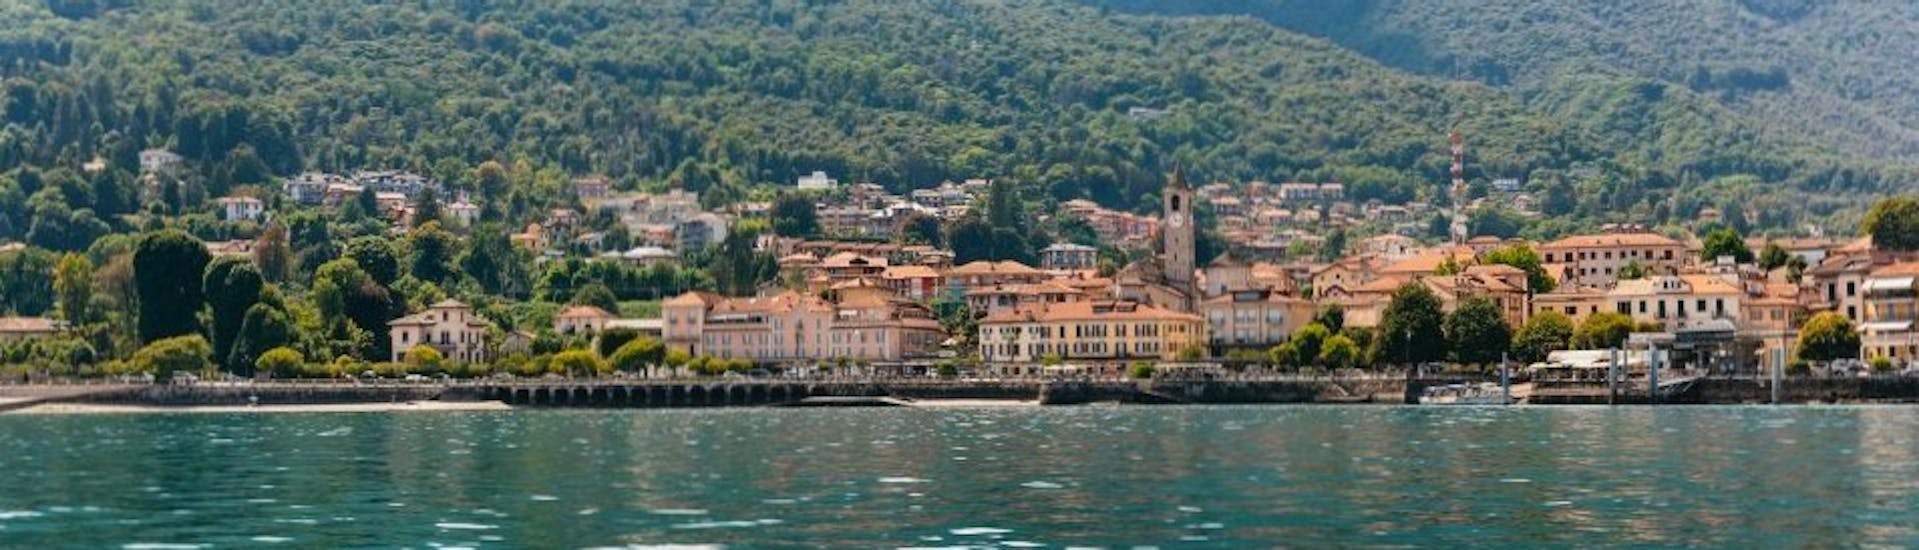 Boottocht van Stresa naar Isola dei Pescatori (Isola Superiore) met toeristische attracties.